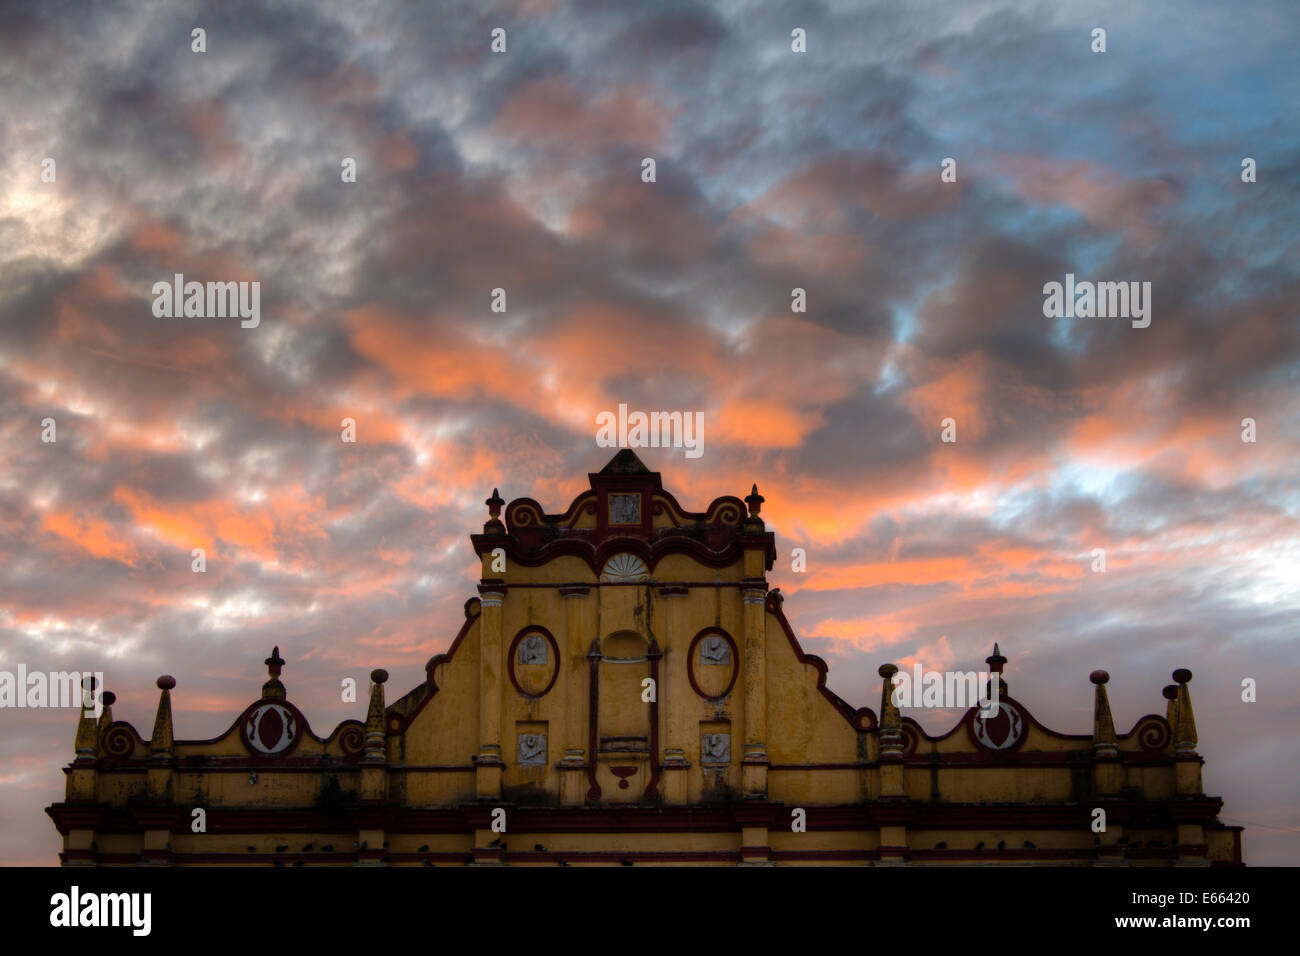 Haut de la cathédrale de San Cristobal de las Casas, Chiapas, Mexique au lever du soleil. Banque D'Images